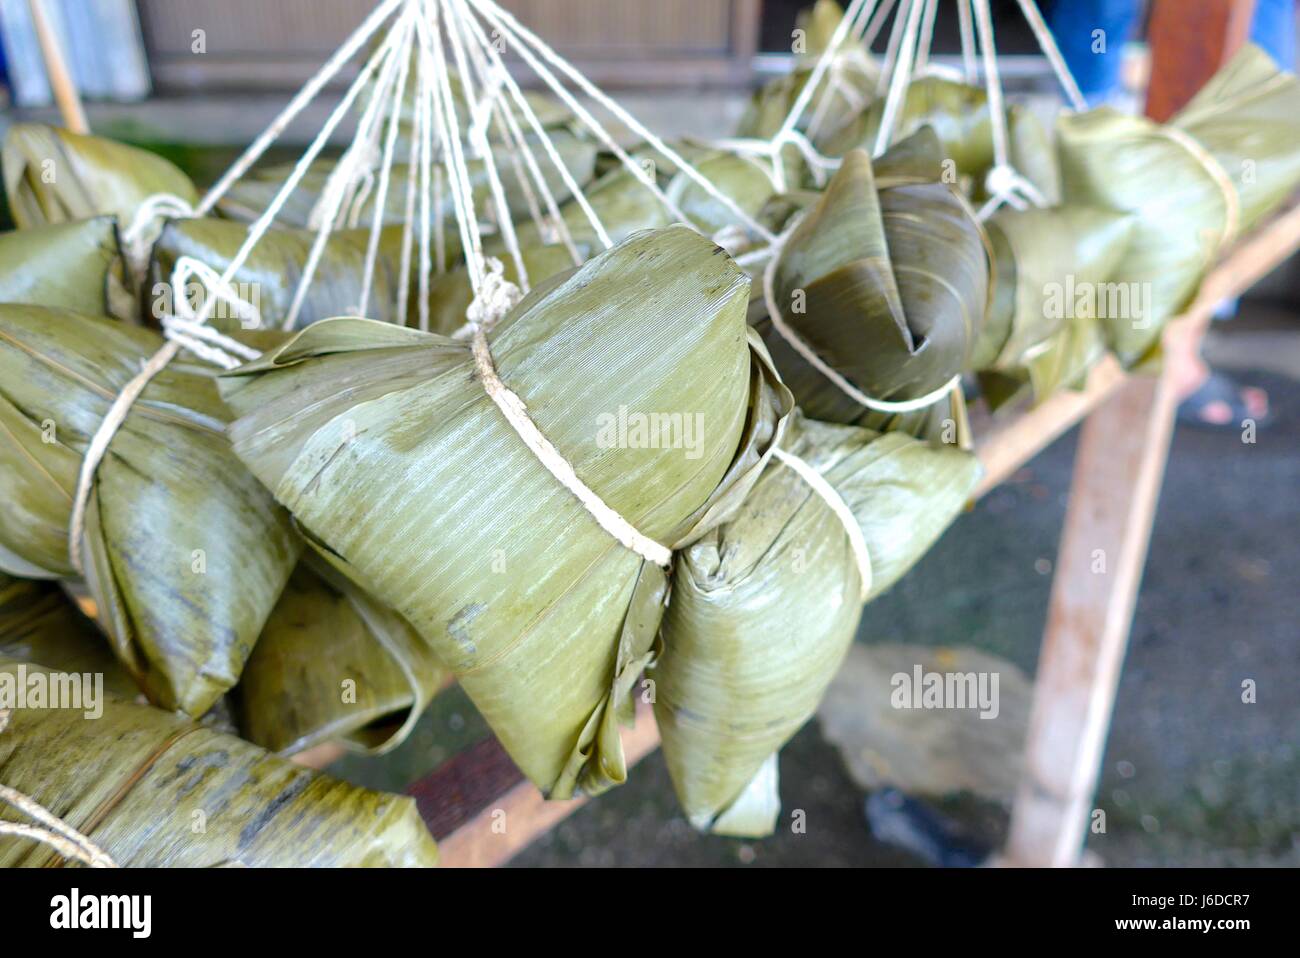 Rice dumplings closeup in Taiwan Stock Photo